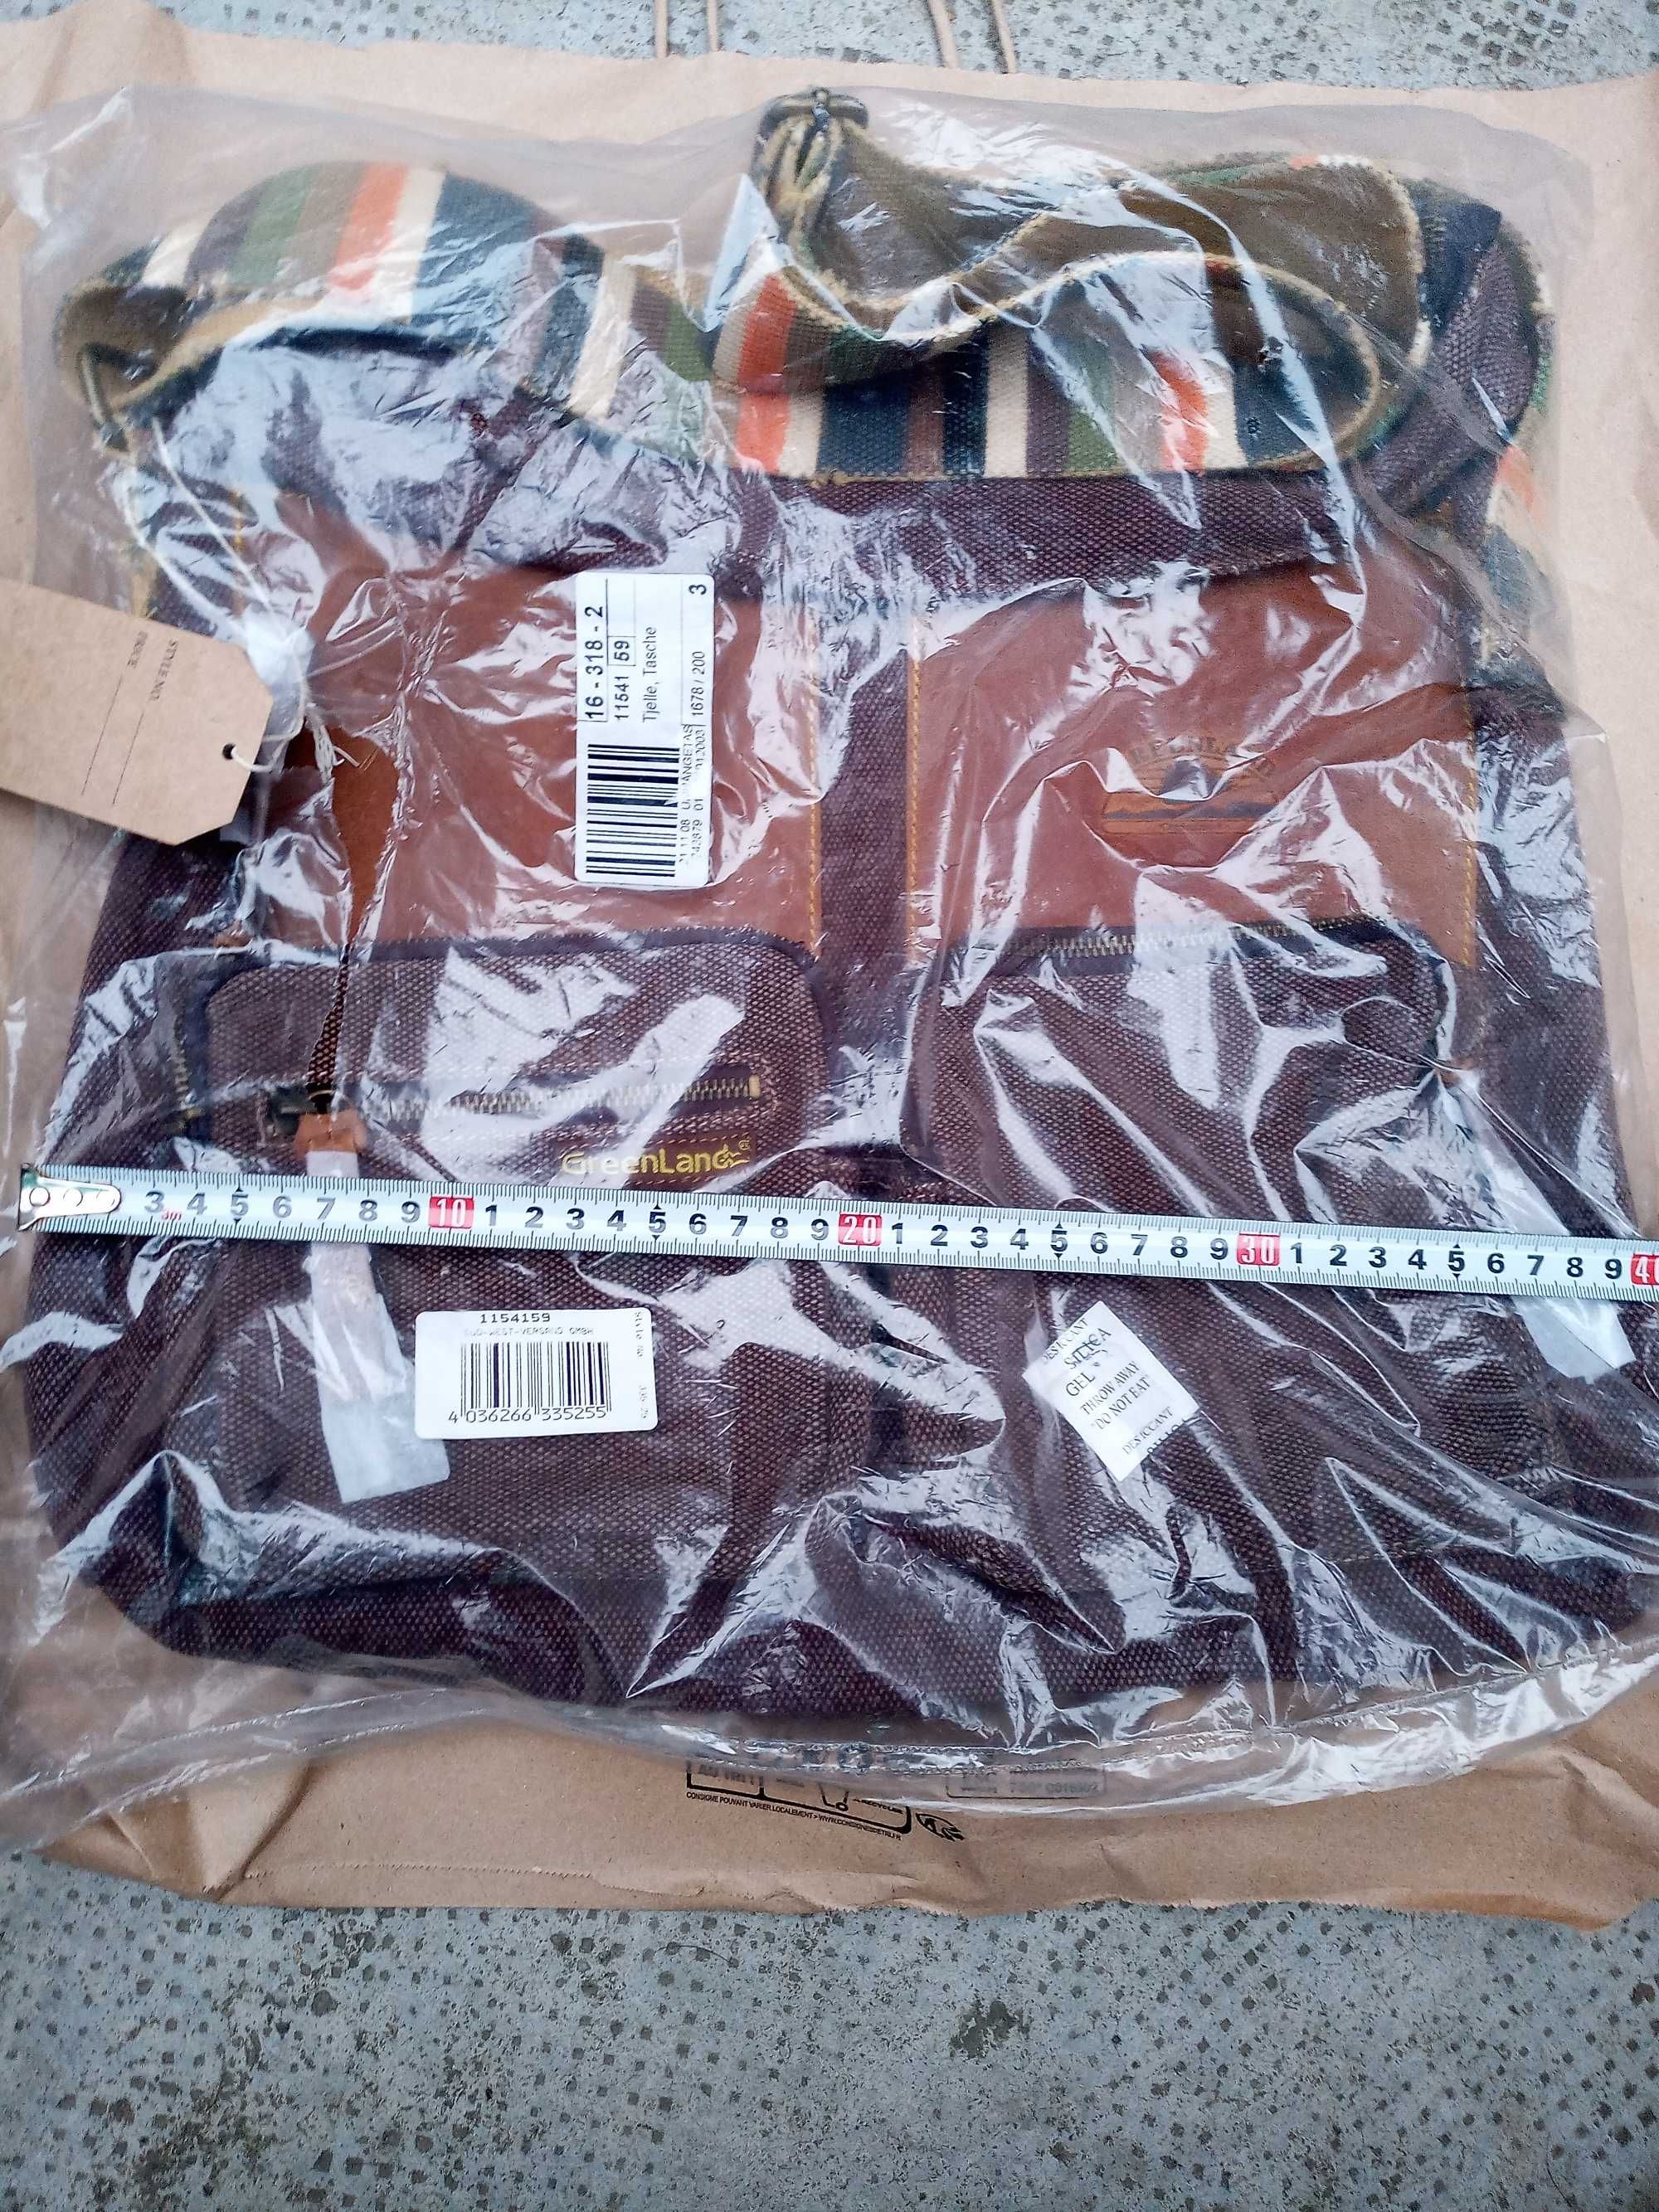 Geantă de umăr tip Urban Bag ,Greenland textil și piele